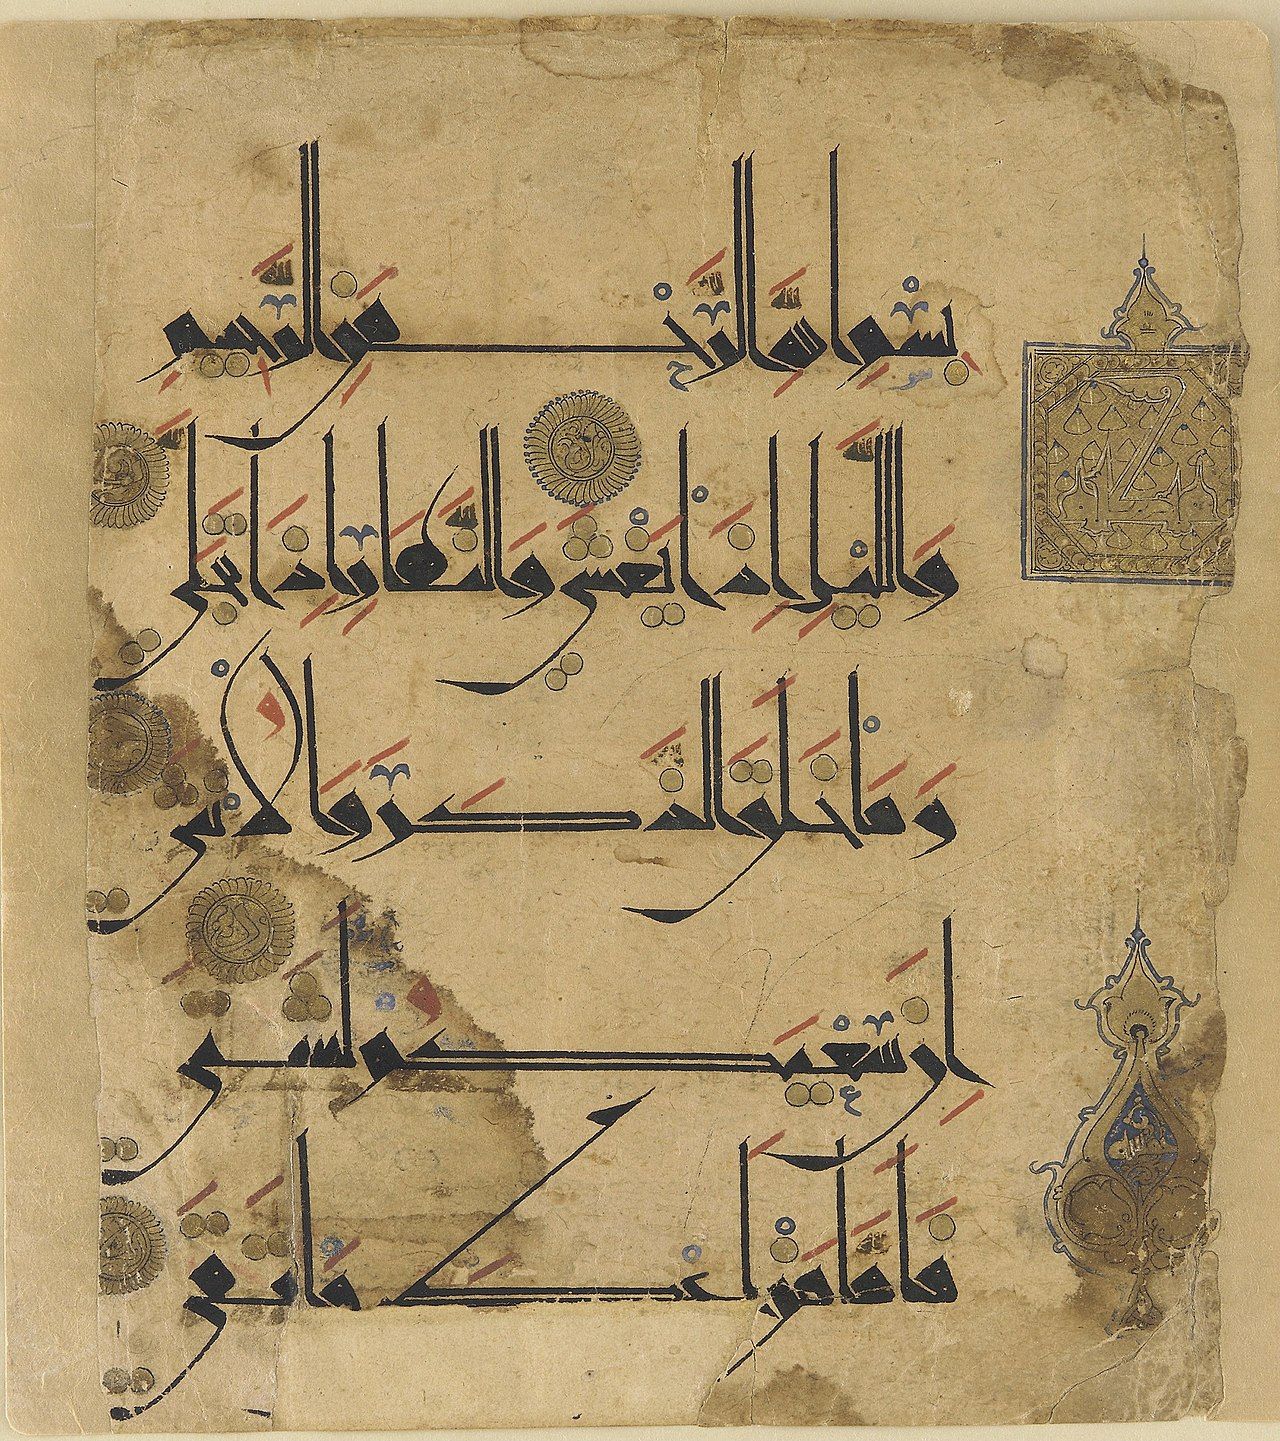 Quranic script